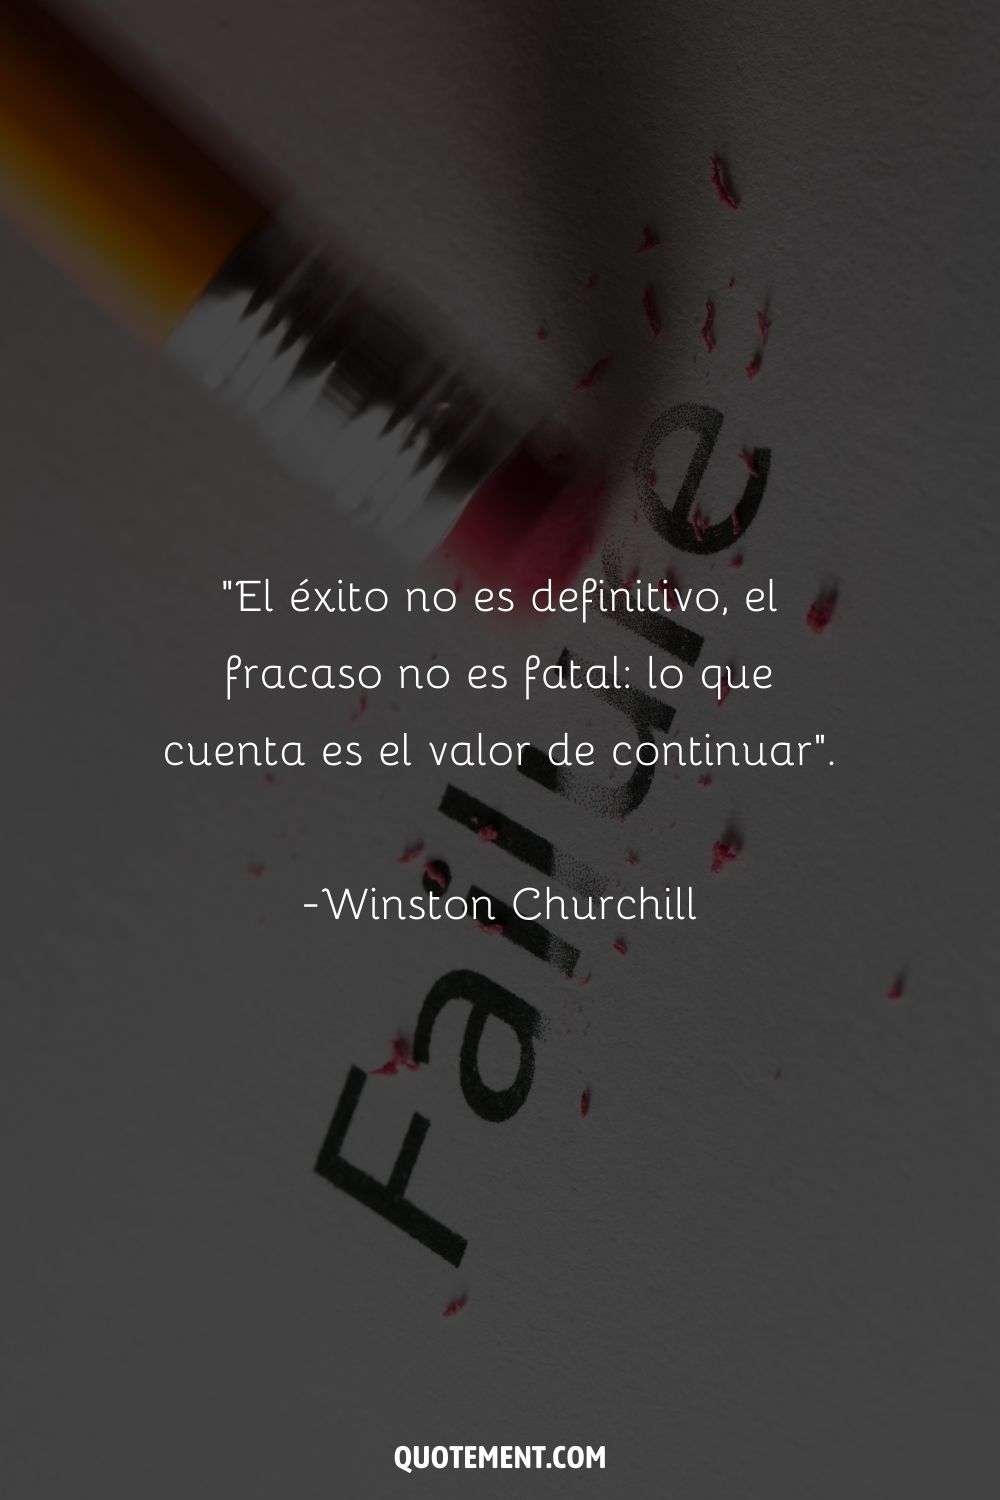 "El éxito no es definitivo, el fracaso no es fatal Lo que cuenta es el valor para continuar". - Winston Churchill